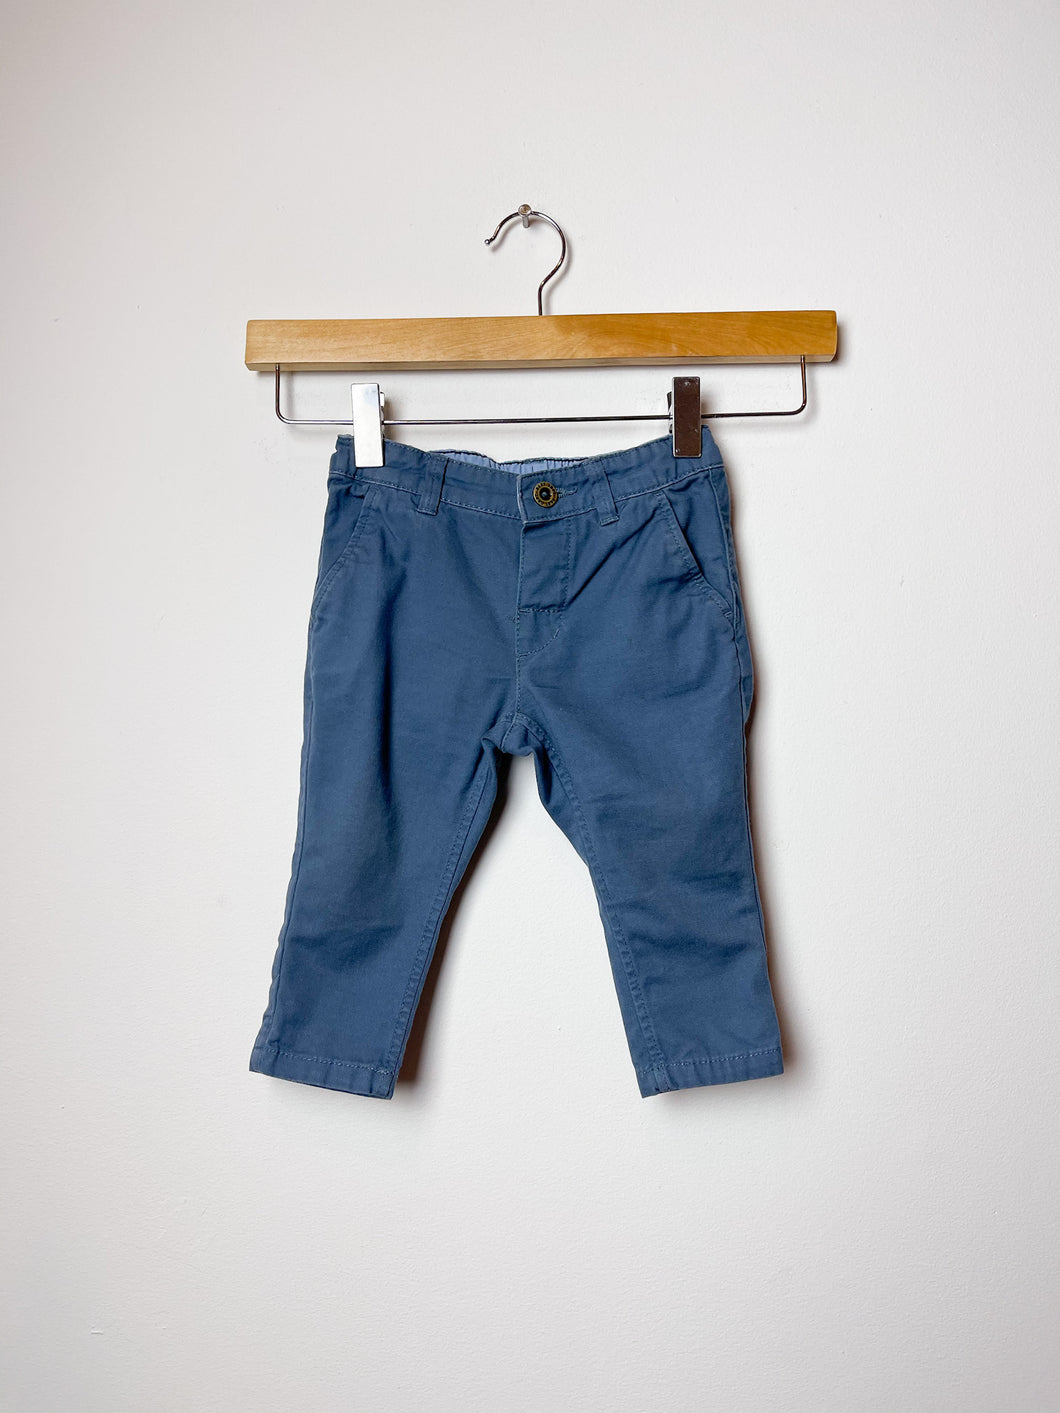 Boys Blue H&M Pants Size 6-9 Months